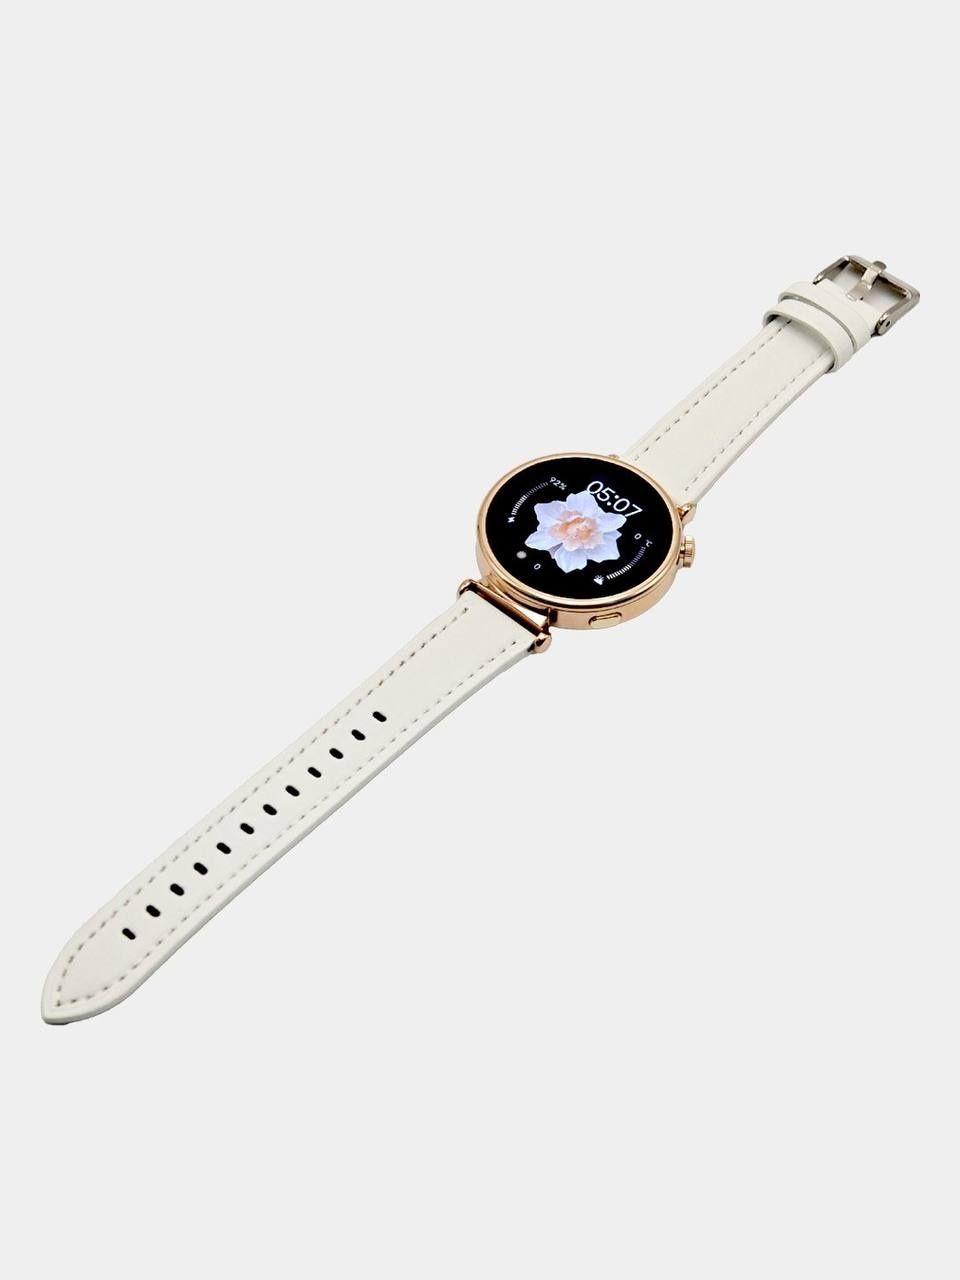 Ipmax GT mini Watch